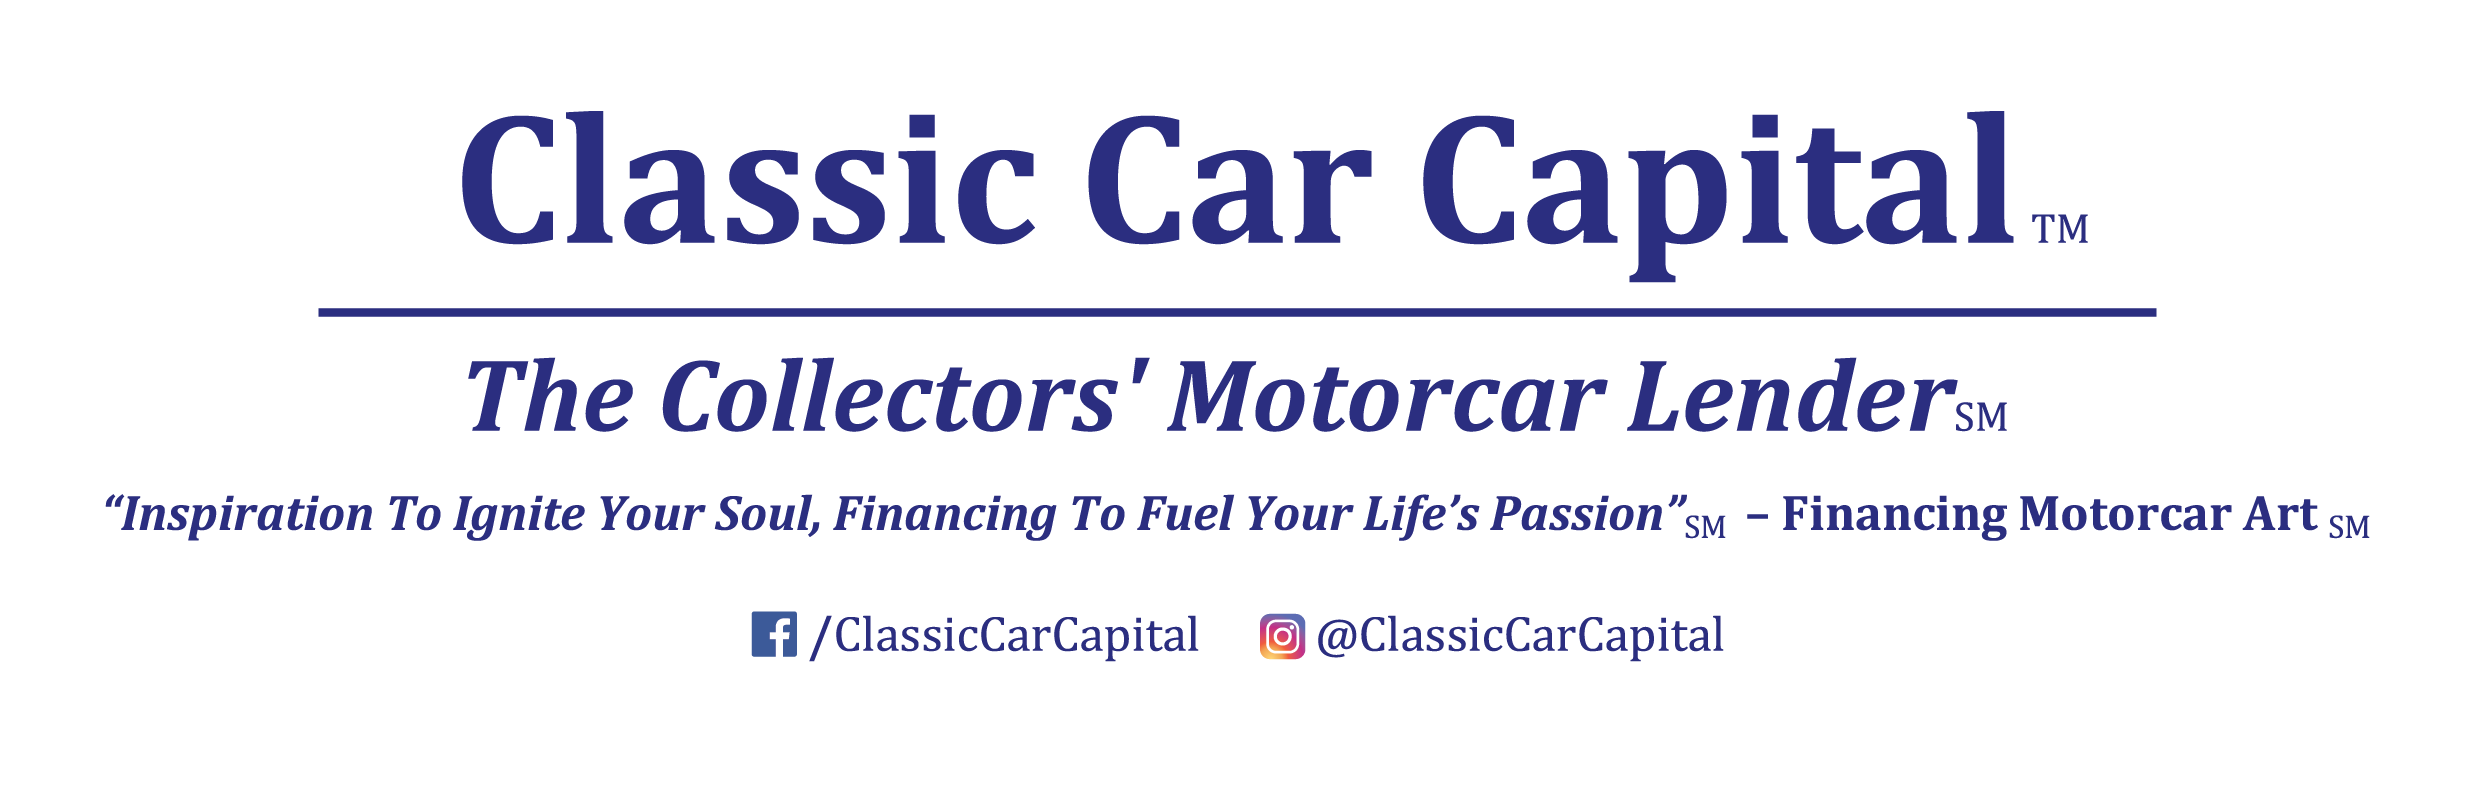 Classic-Car-Capital_Logo_Tagline_Social-Media.png